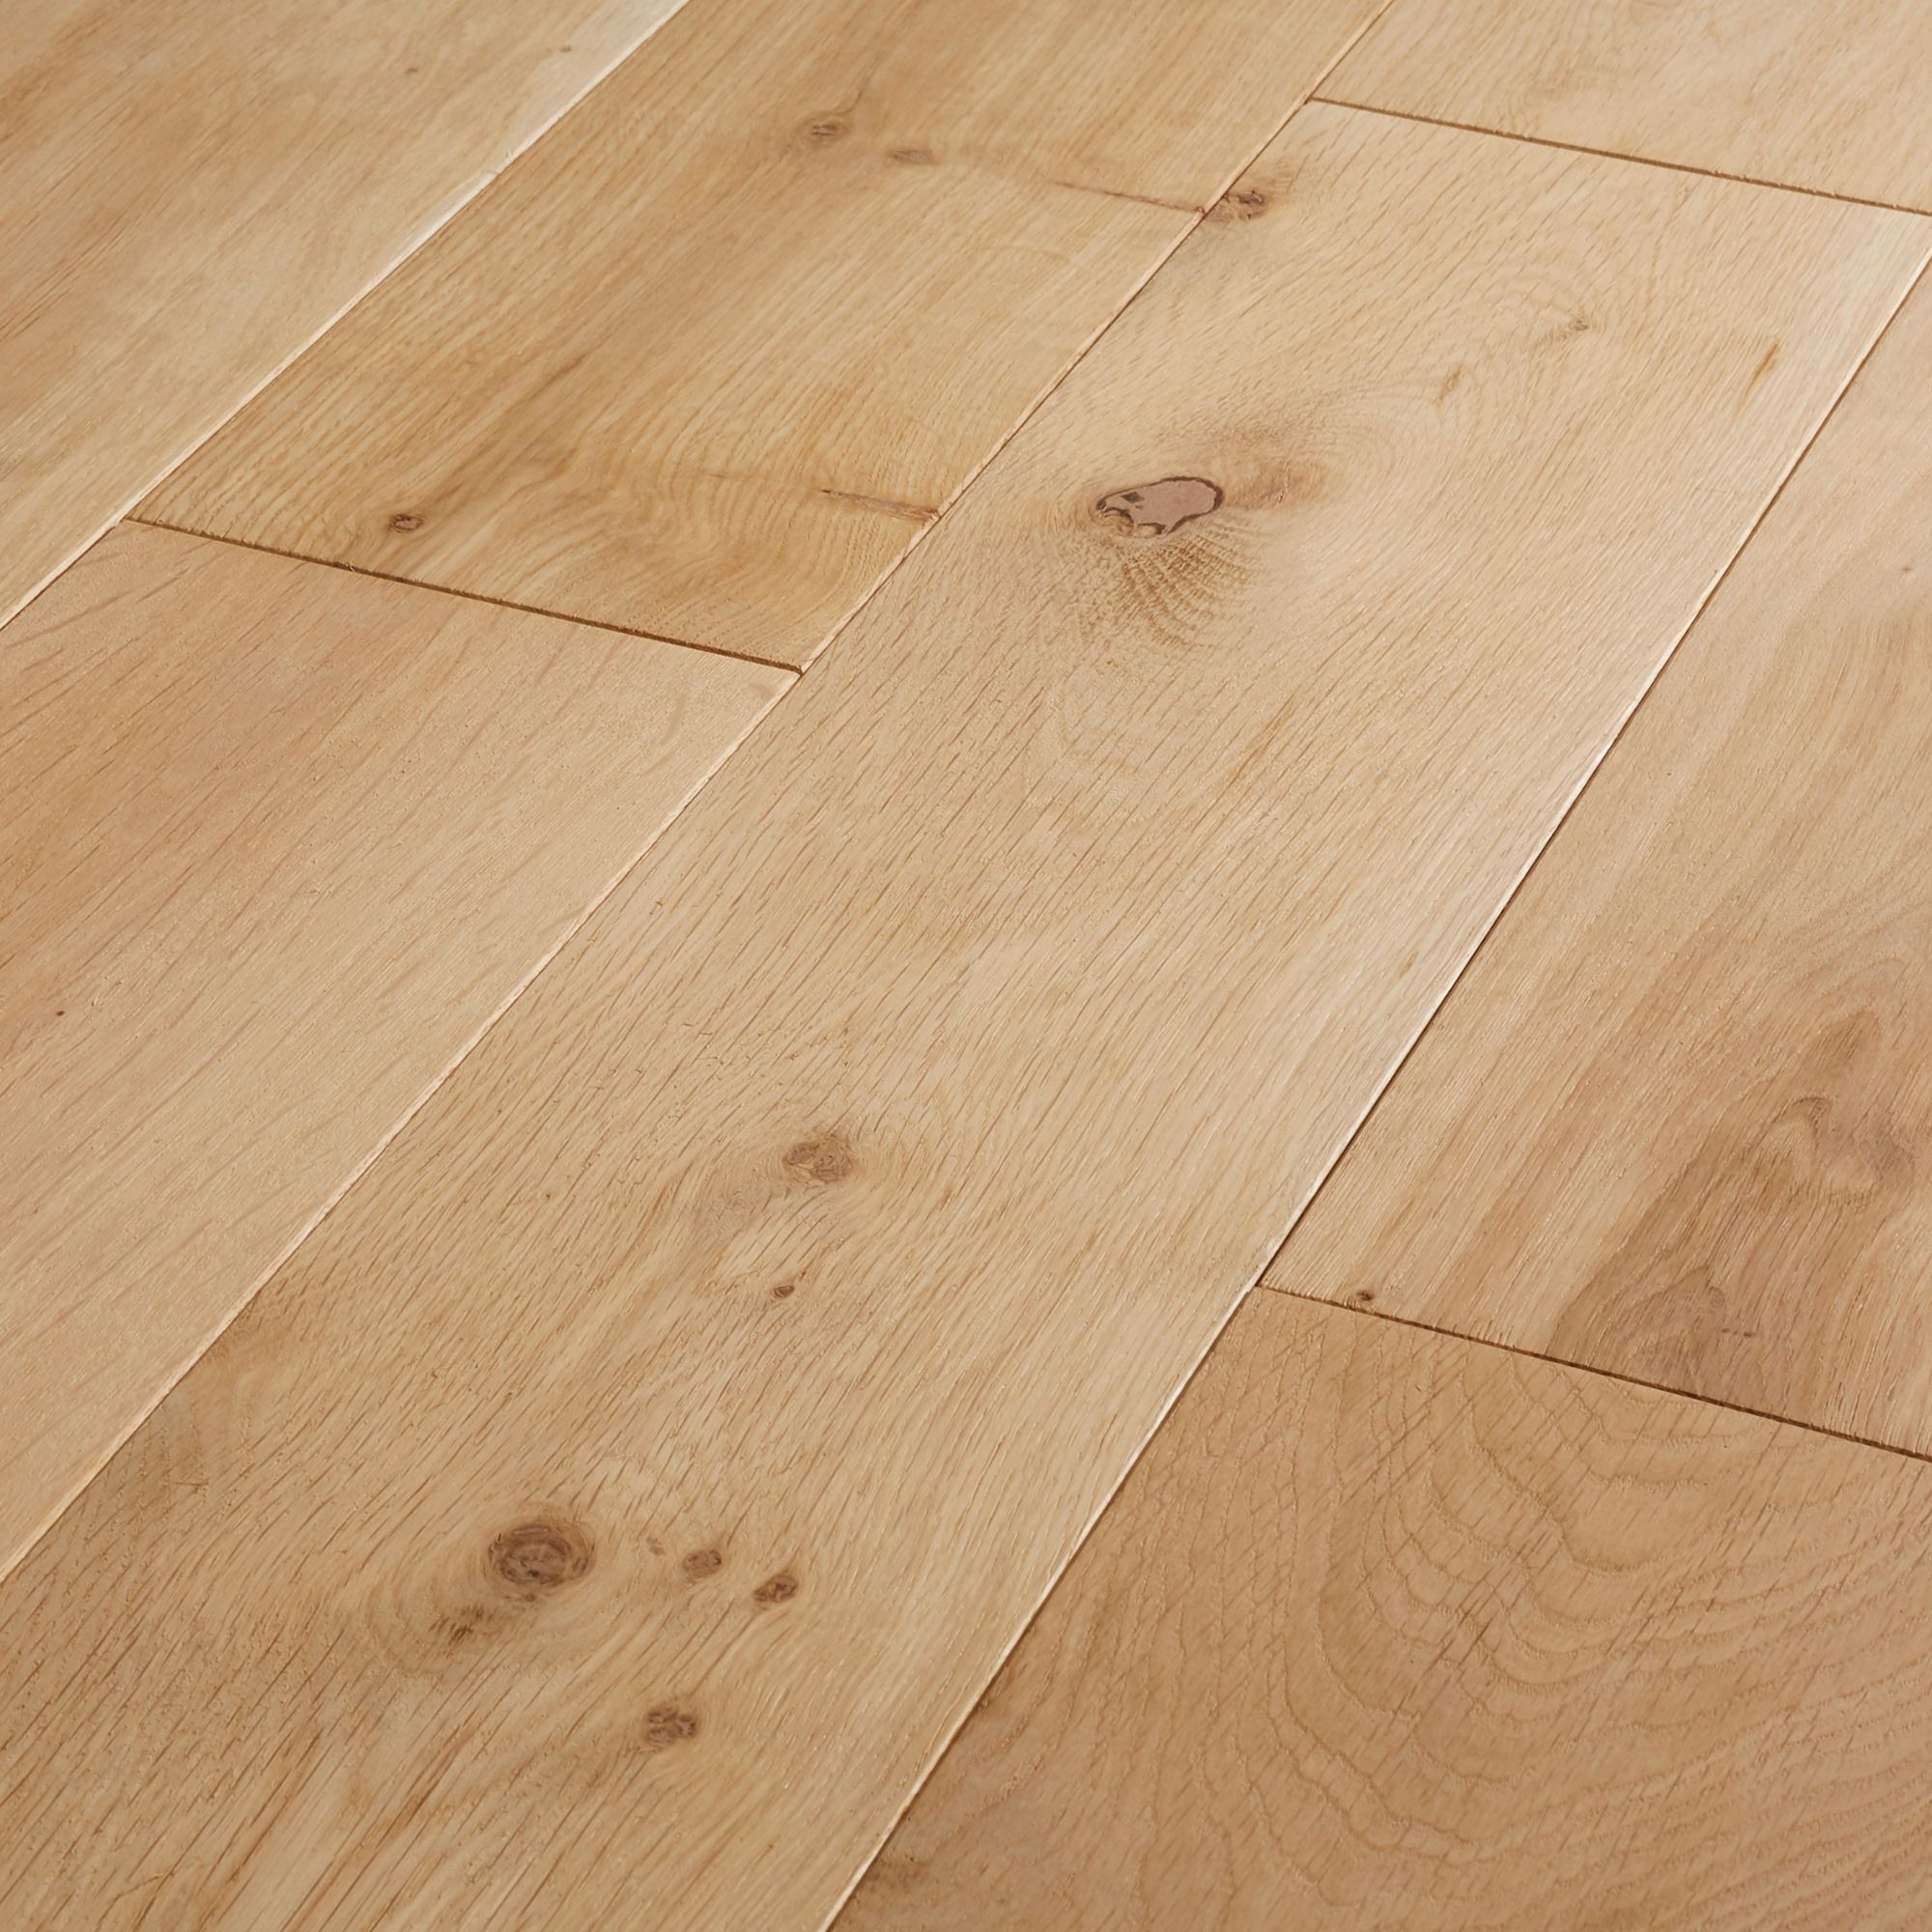 Goodhome Lulea Natural Oak Solid Wood Flooring 1 26m² Pack